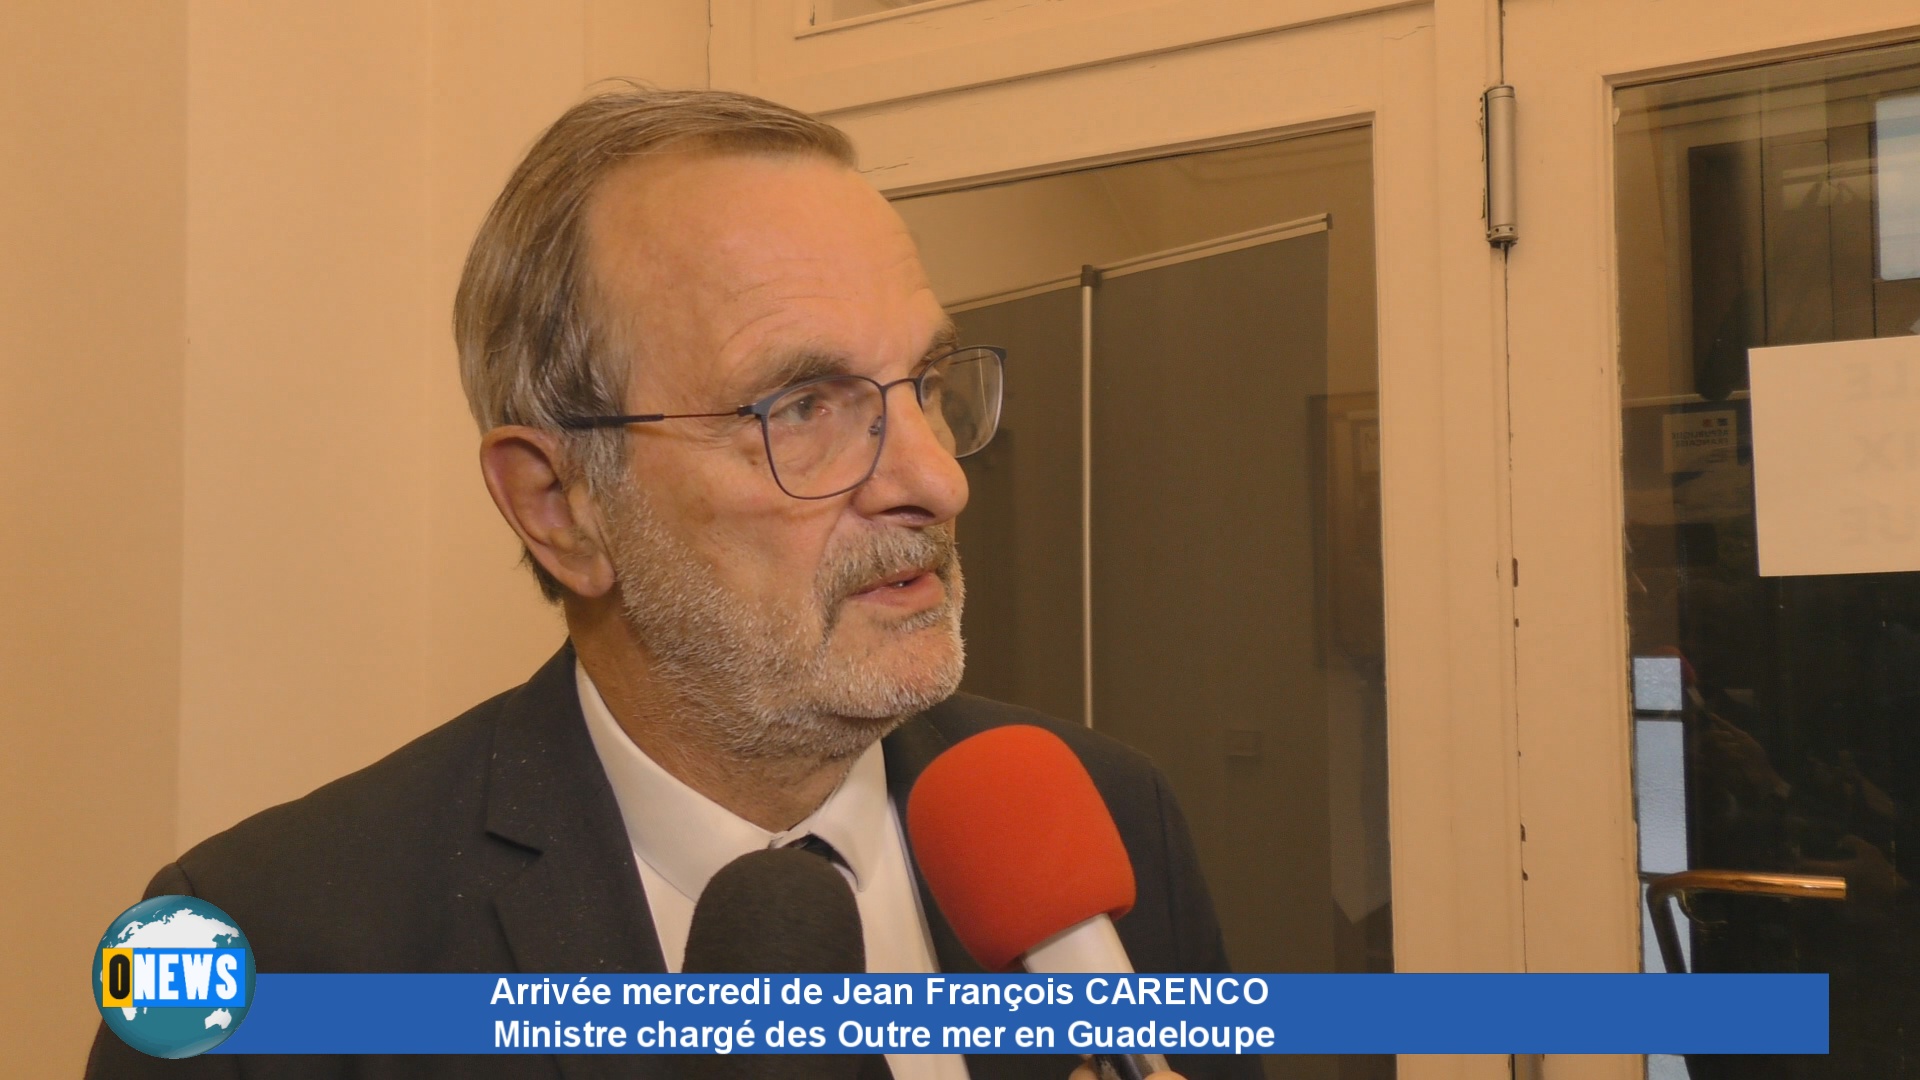 [Vidéo] Tempête FIONA. Jean François CARENCO Ministre chargé des Outre mer annonce son arrivée en Guadeloupe Mercredi